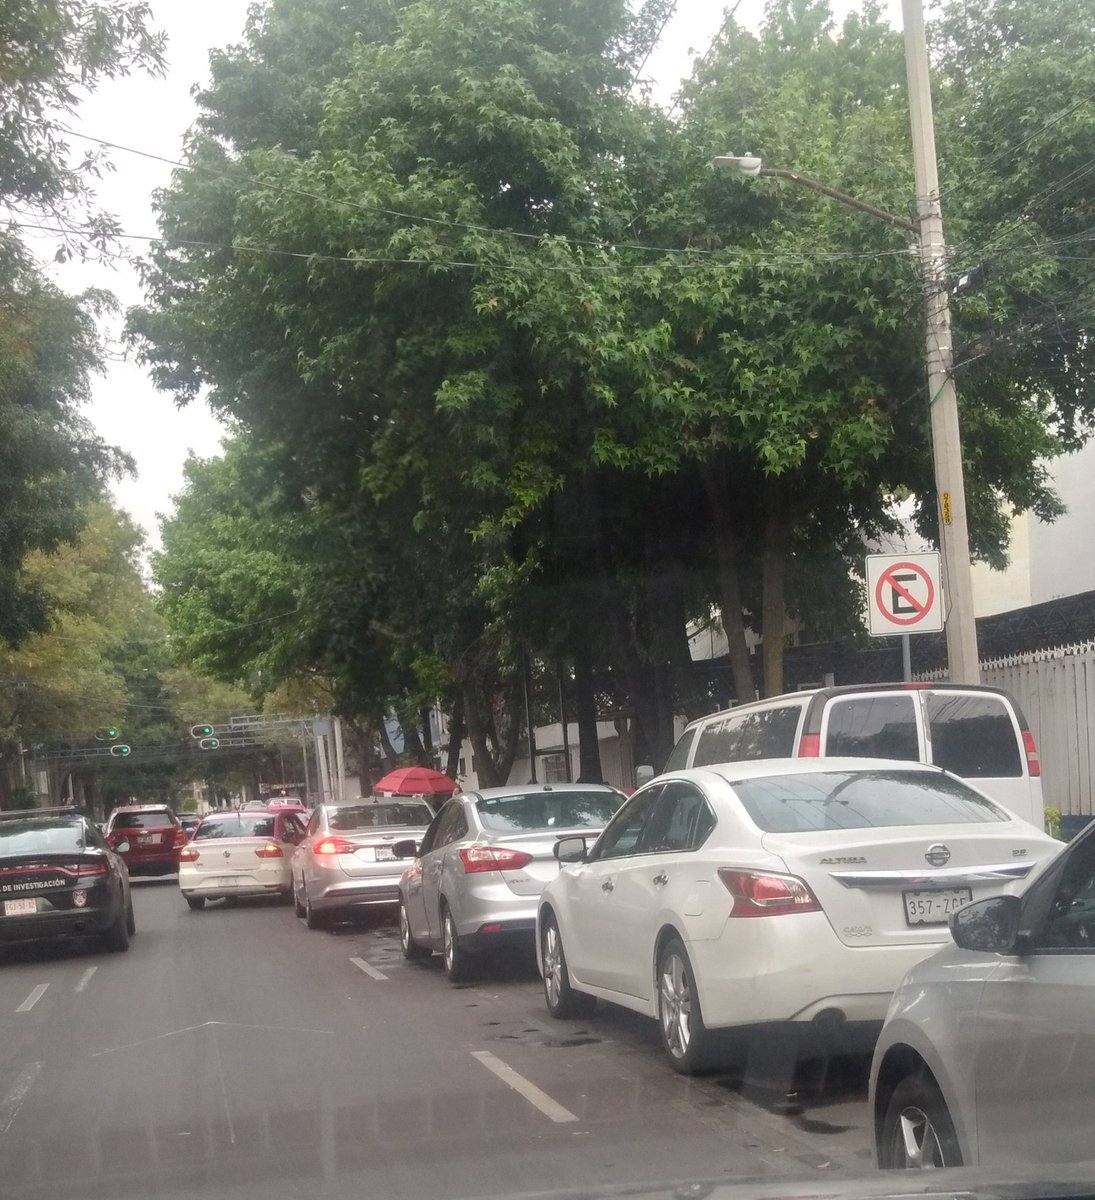 Los fines de semana estan multando a los vehiculos estacionados sobre Av Coyoacan y frente a la PGJCDMX siguen hasta en doble fila y no marcaron la ciclovia que viene por toda la avenida @LaSEMOVI @BJAlcaldia @STaboadaMx @AlcaldiaBJ @OVIALCDMX @SSC_CDMX